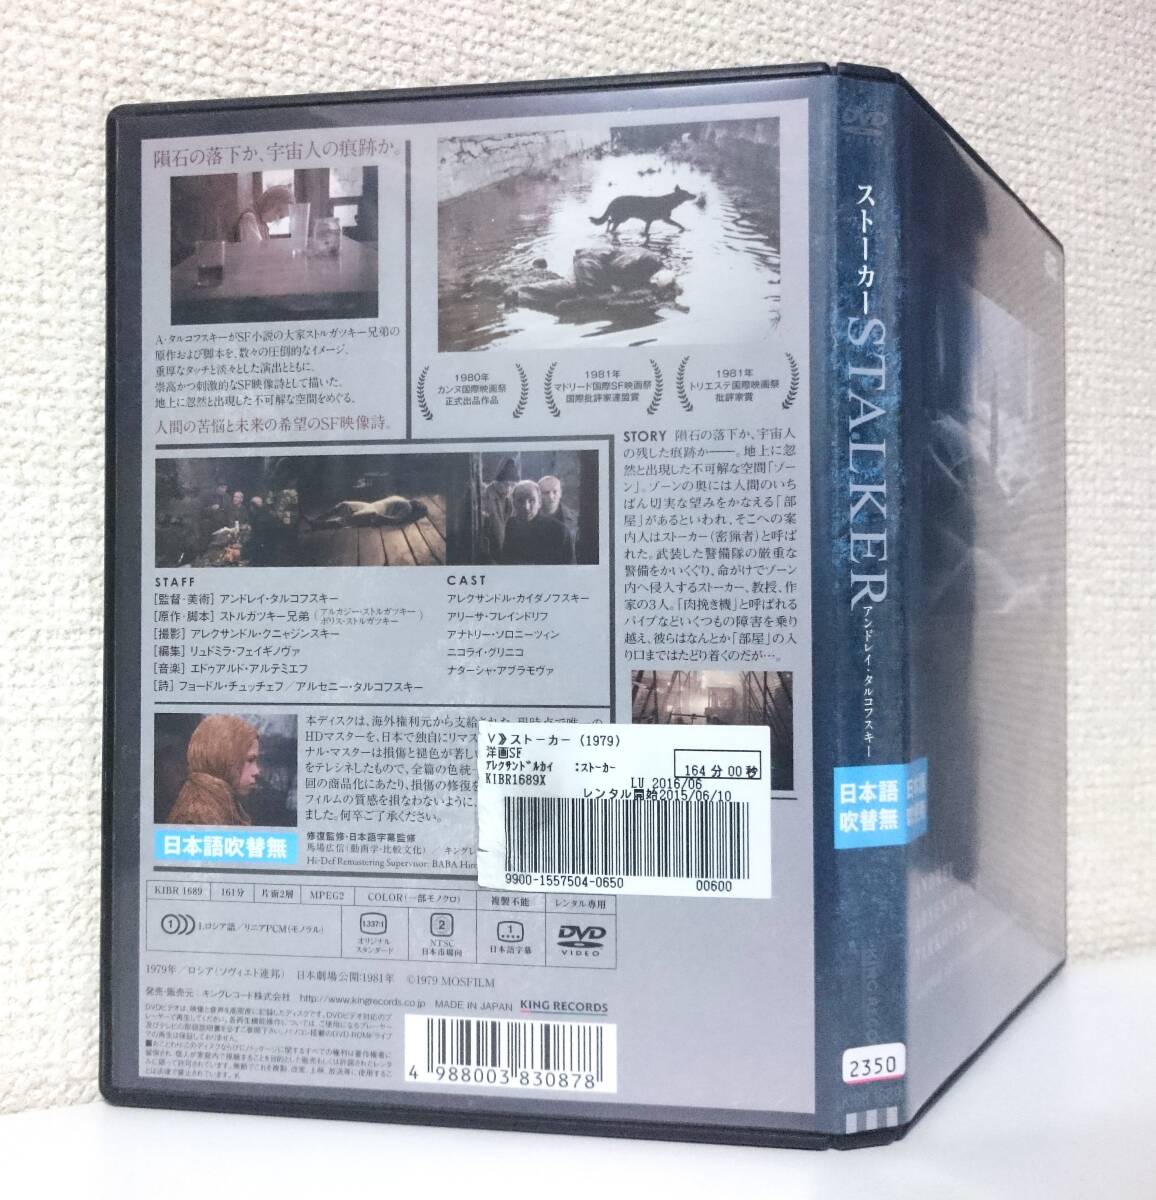 ストーカー / STALKER　国内版DVD レンタル使用品　1979年 アンドレイ・タルコフスキー　ストルガツキー兄弟　70年代 SF映画_背面にやや日焼退色。背面下部に管理番号。